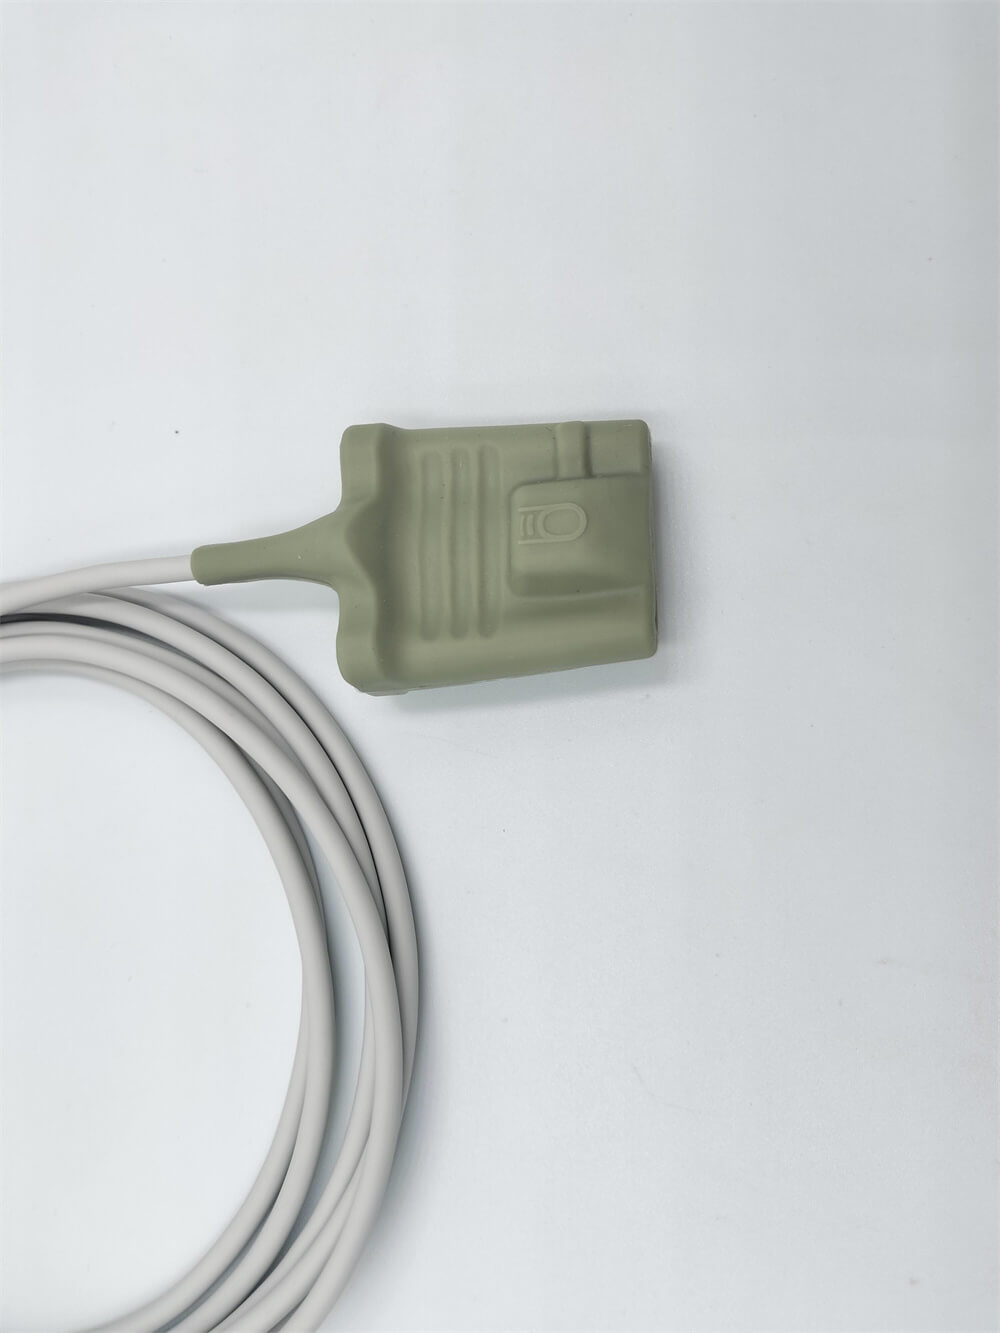 Yeniden Kullanılabilir Spo2 Sensörü Yenidoğan Sargısı 6 Pin Uyumlu Contec